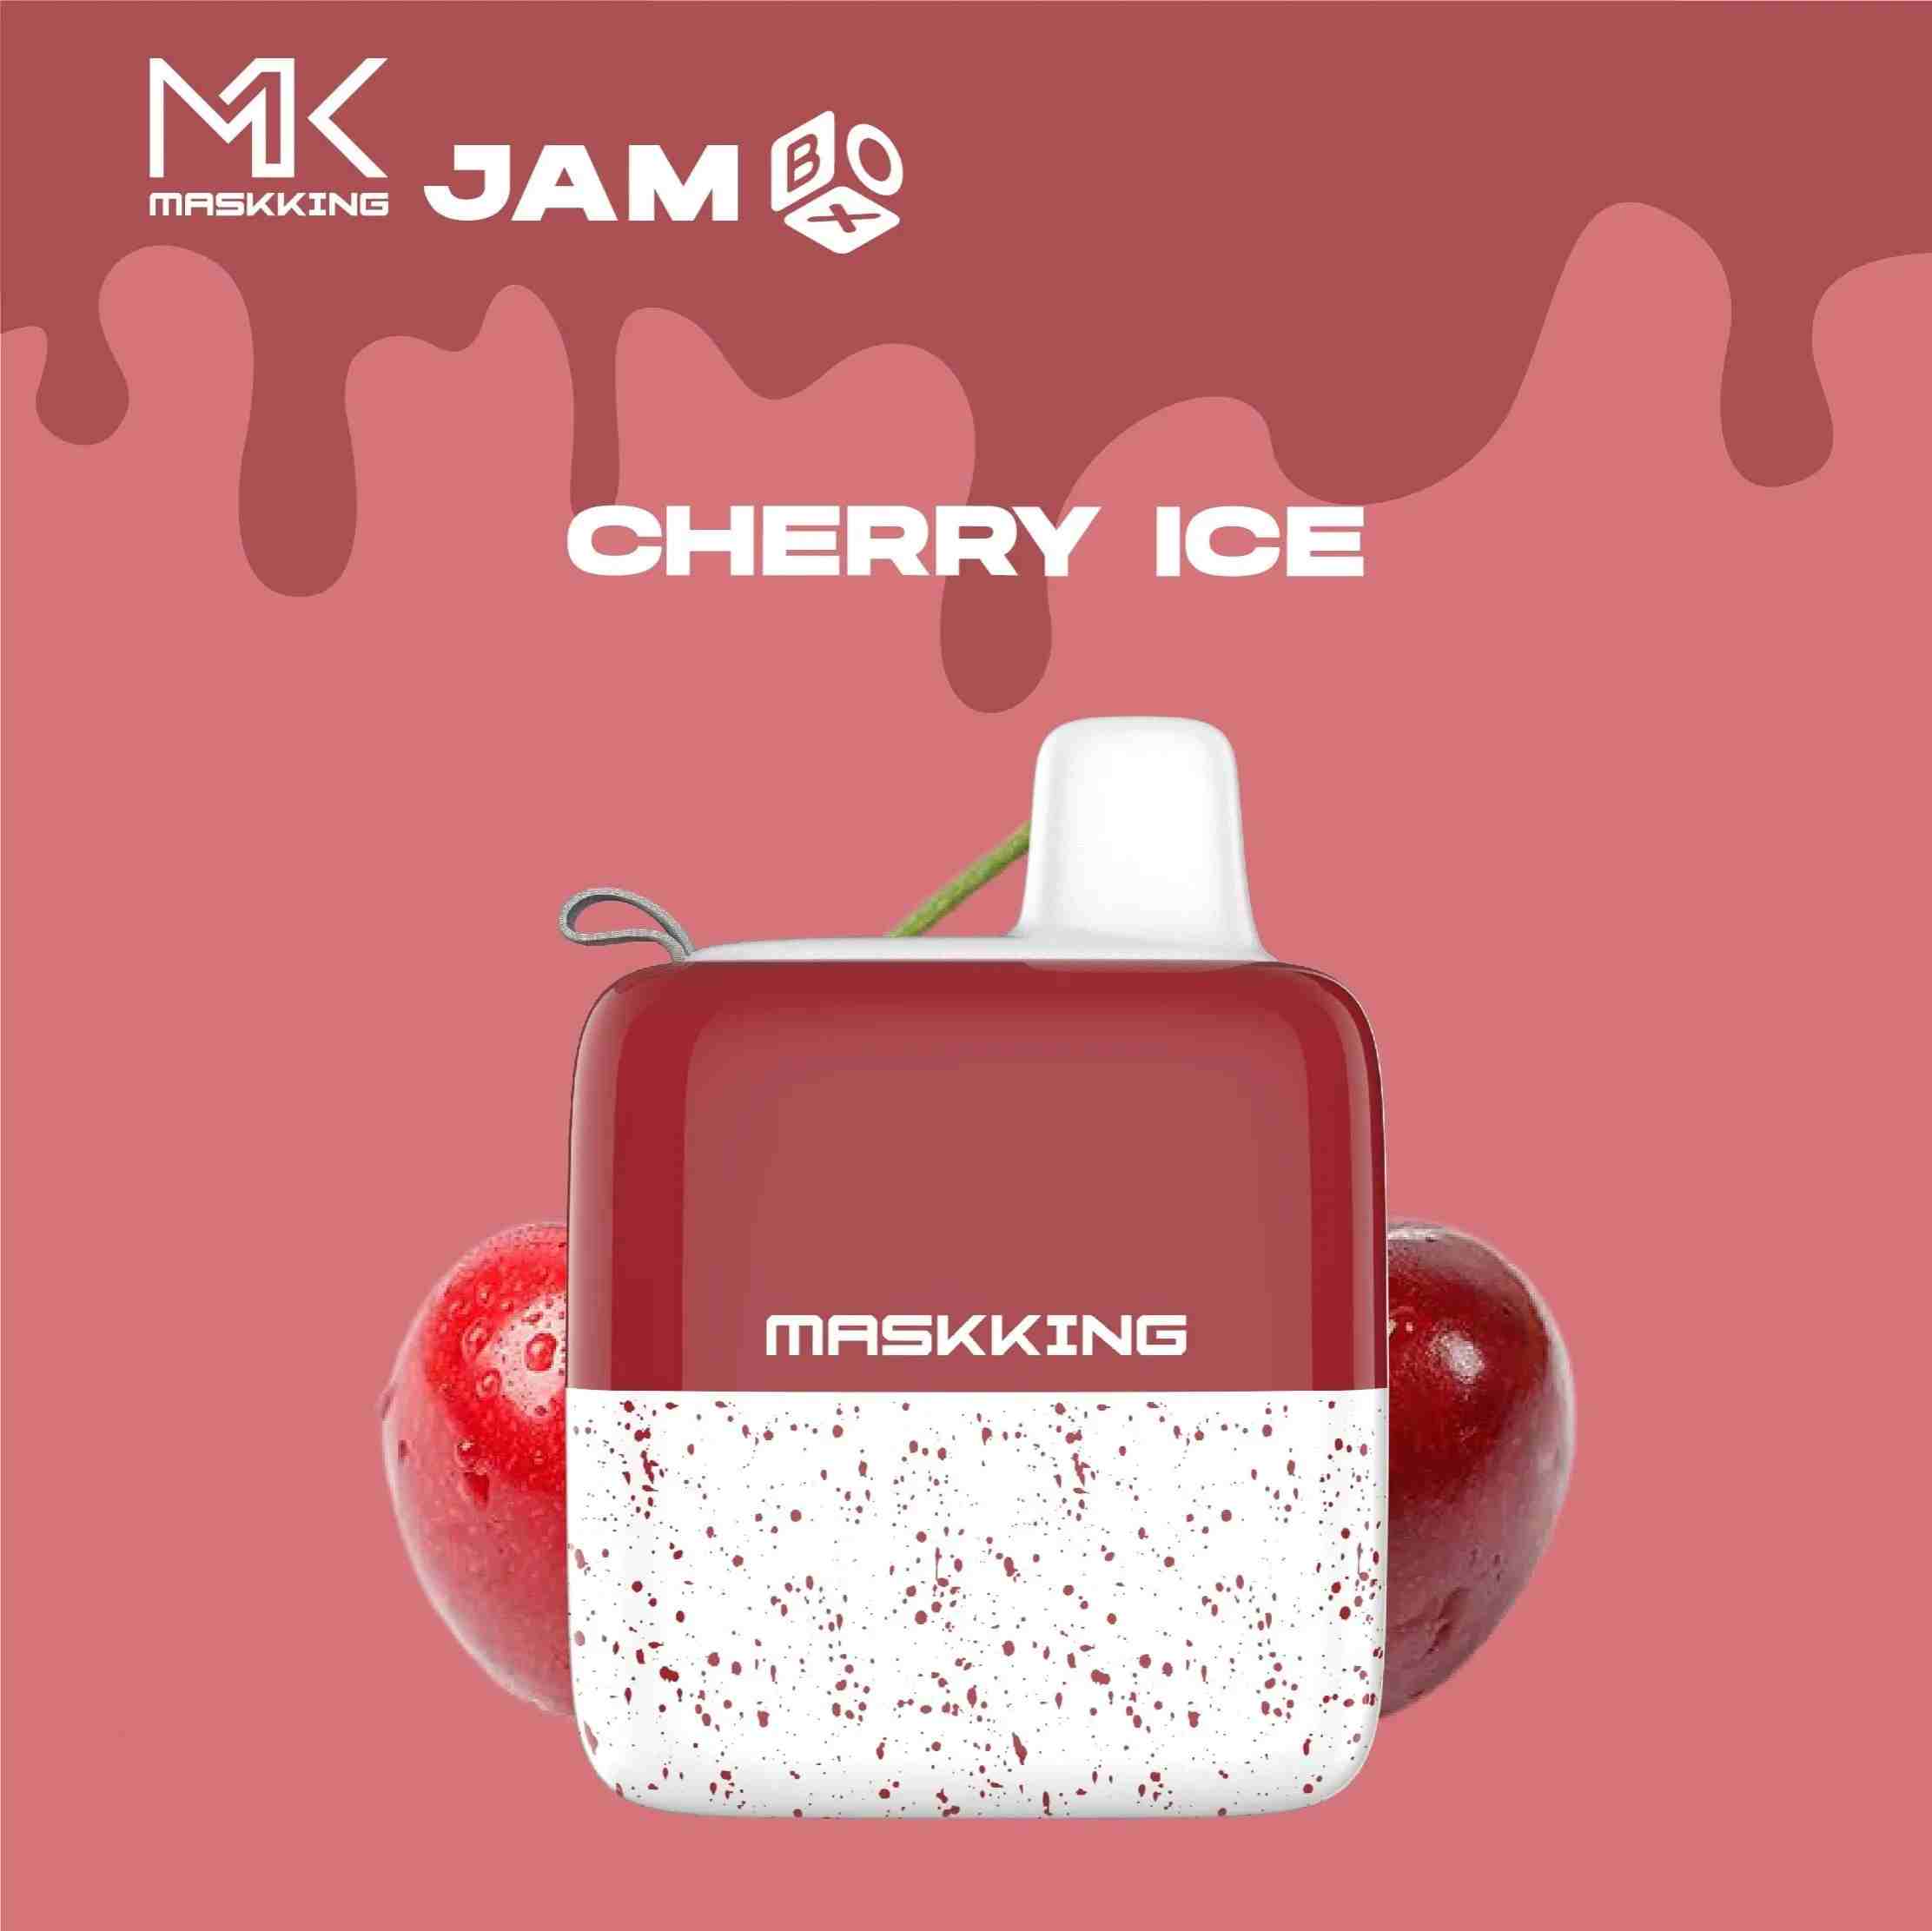 Maskking Jam Box - Cherry ice